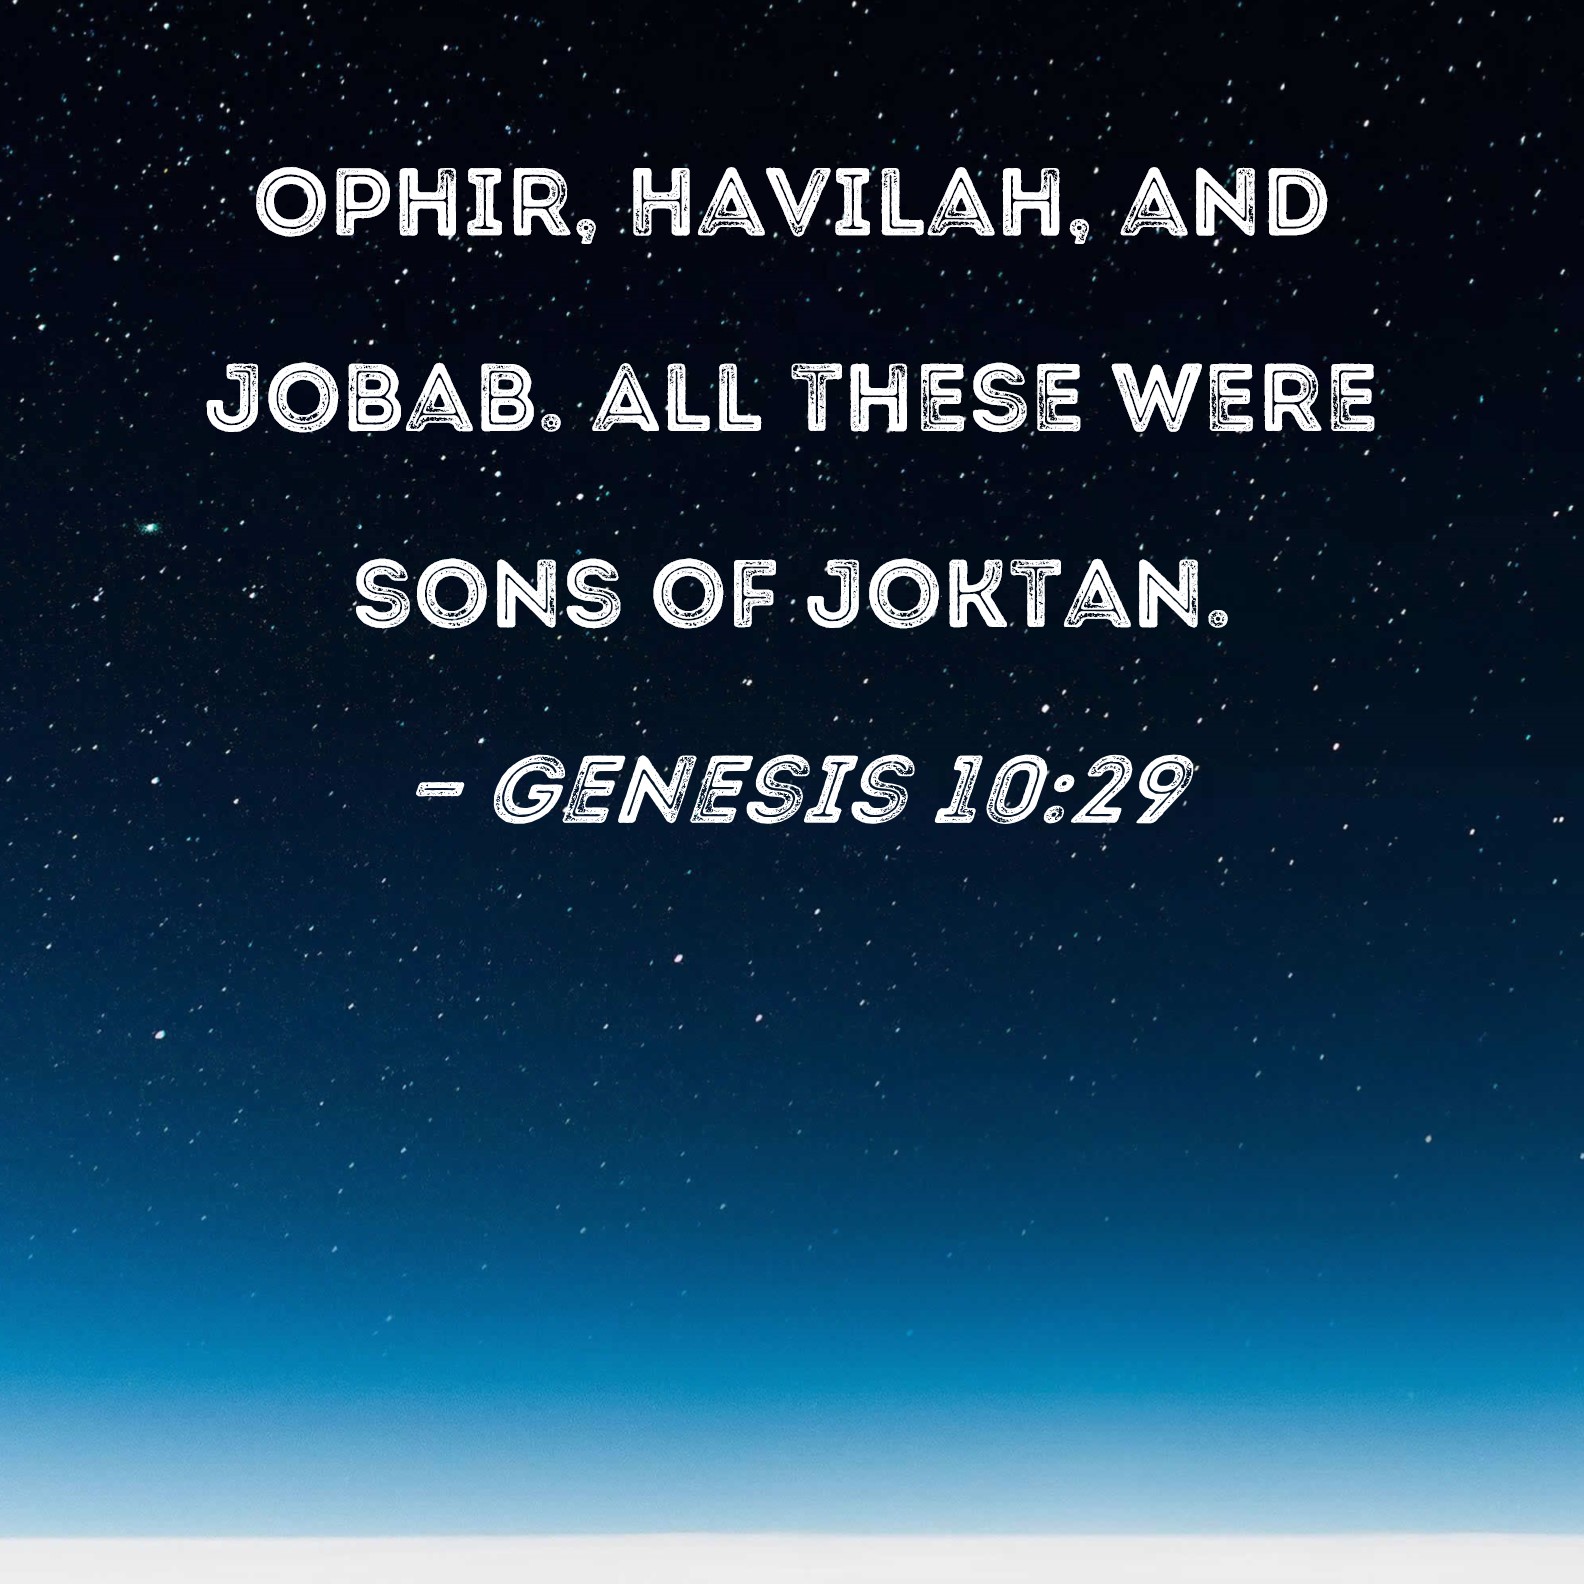 Genesis 10:29 Ophir, Havilah, and Jobab. All these were sons of Joktan.